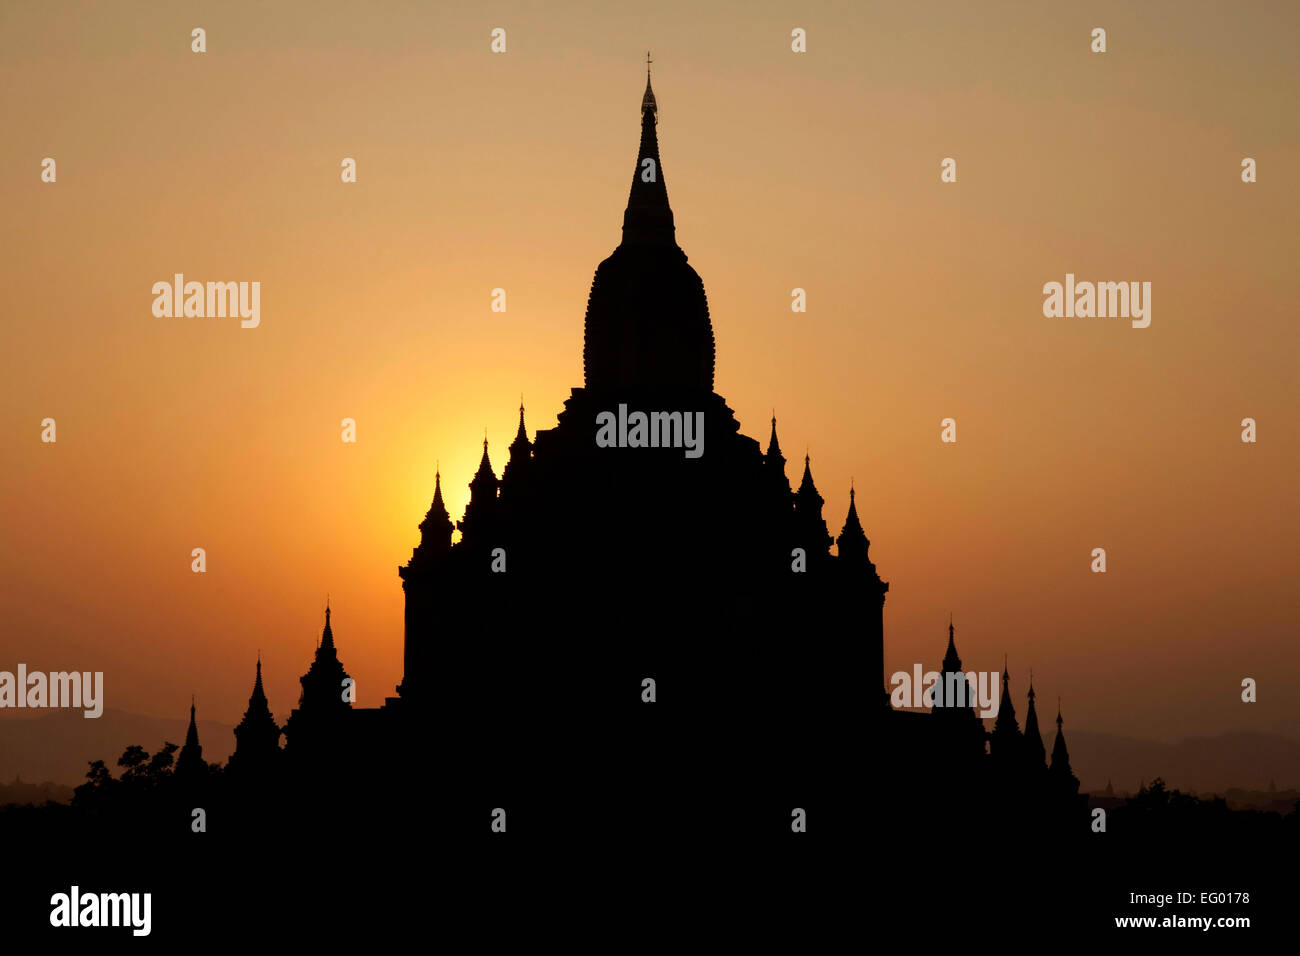 Silhouette d'un temple bouddhiste dans la pagode / Bagan Plains au coucher du soleil, Région de Mandalay, Myanmar / Birmanie Banque D'Images